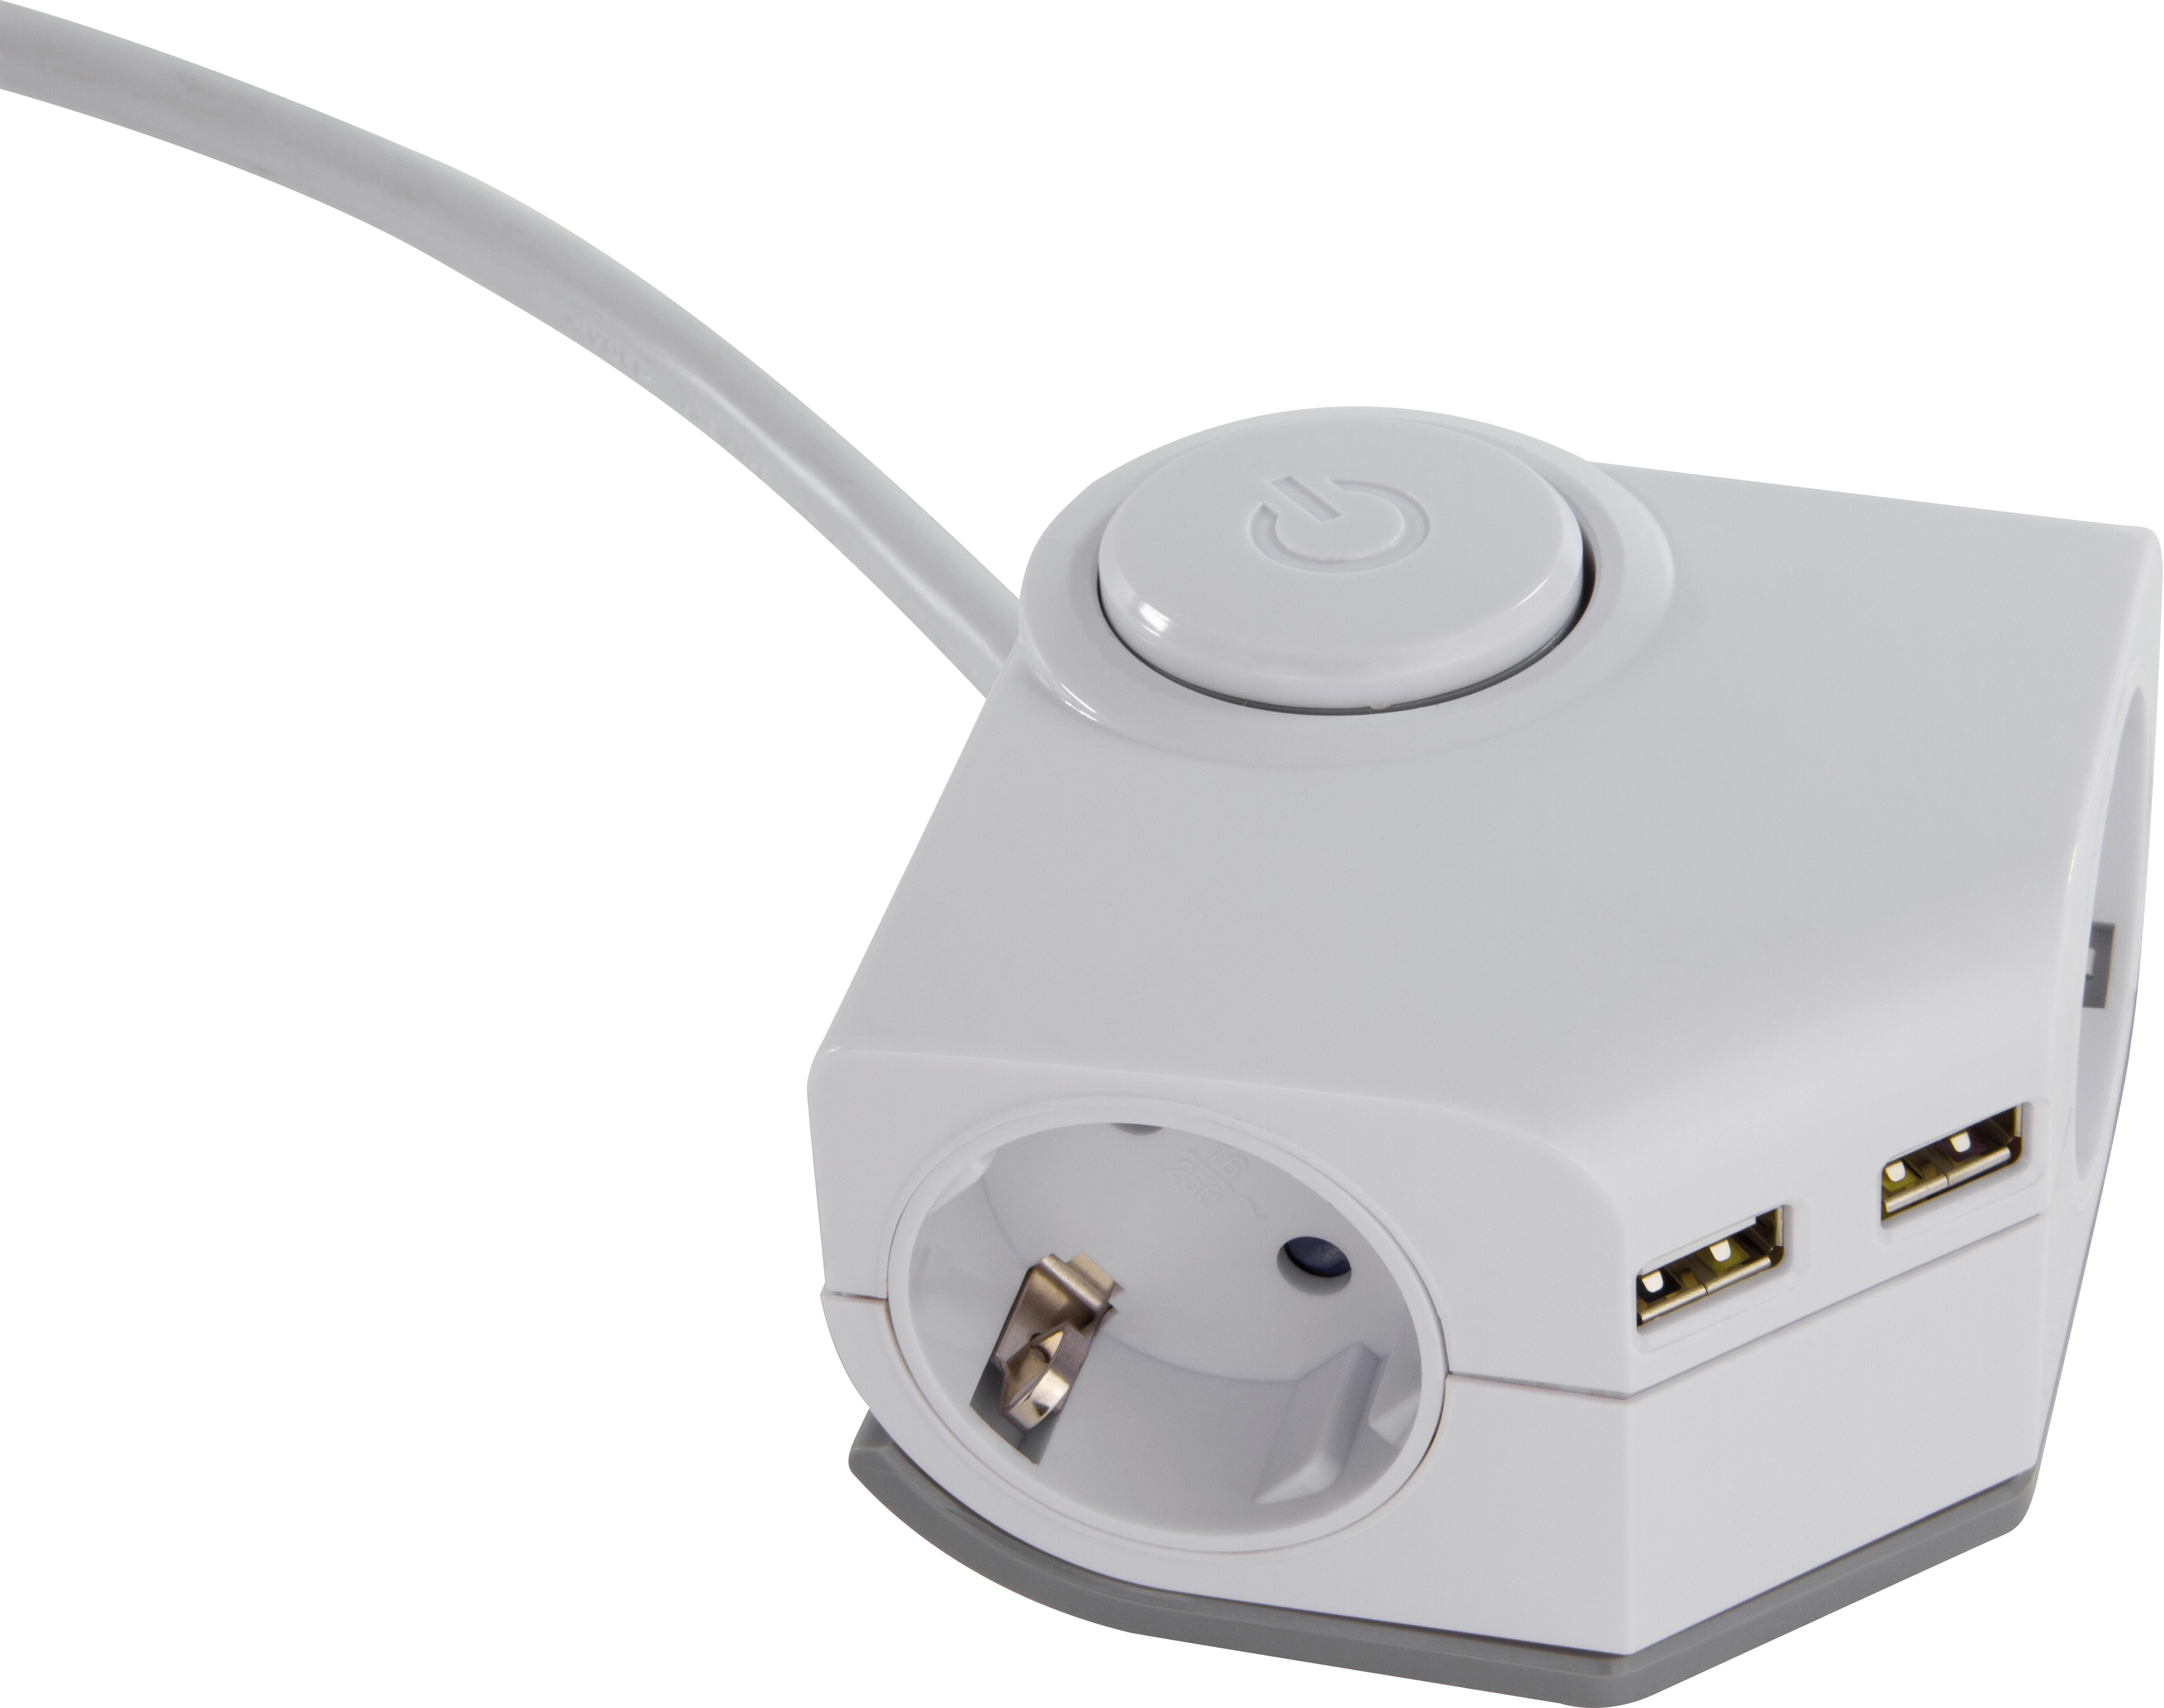 Steckdosen-Adapter mit 2 x USB Port Weiß kaufen bei OBI